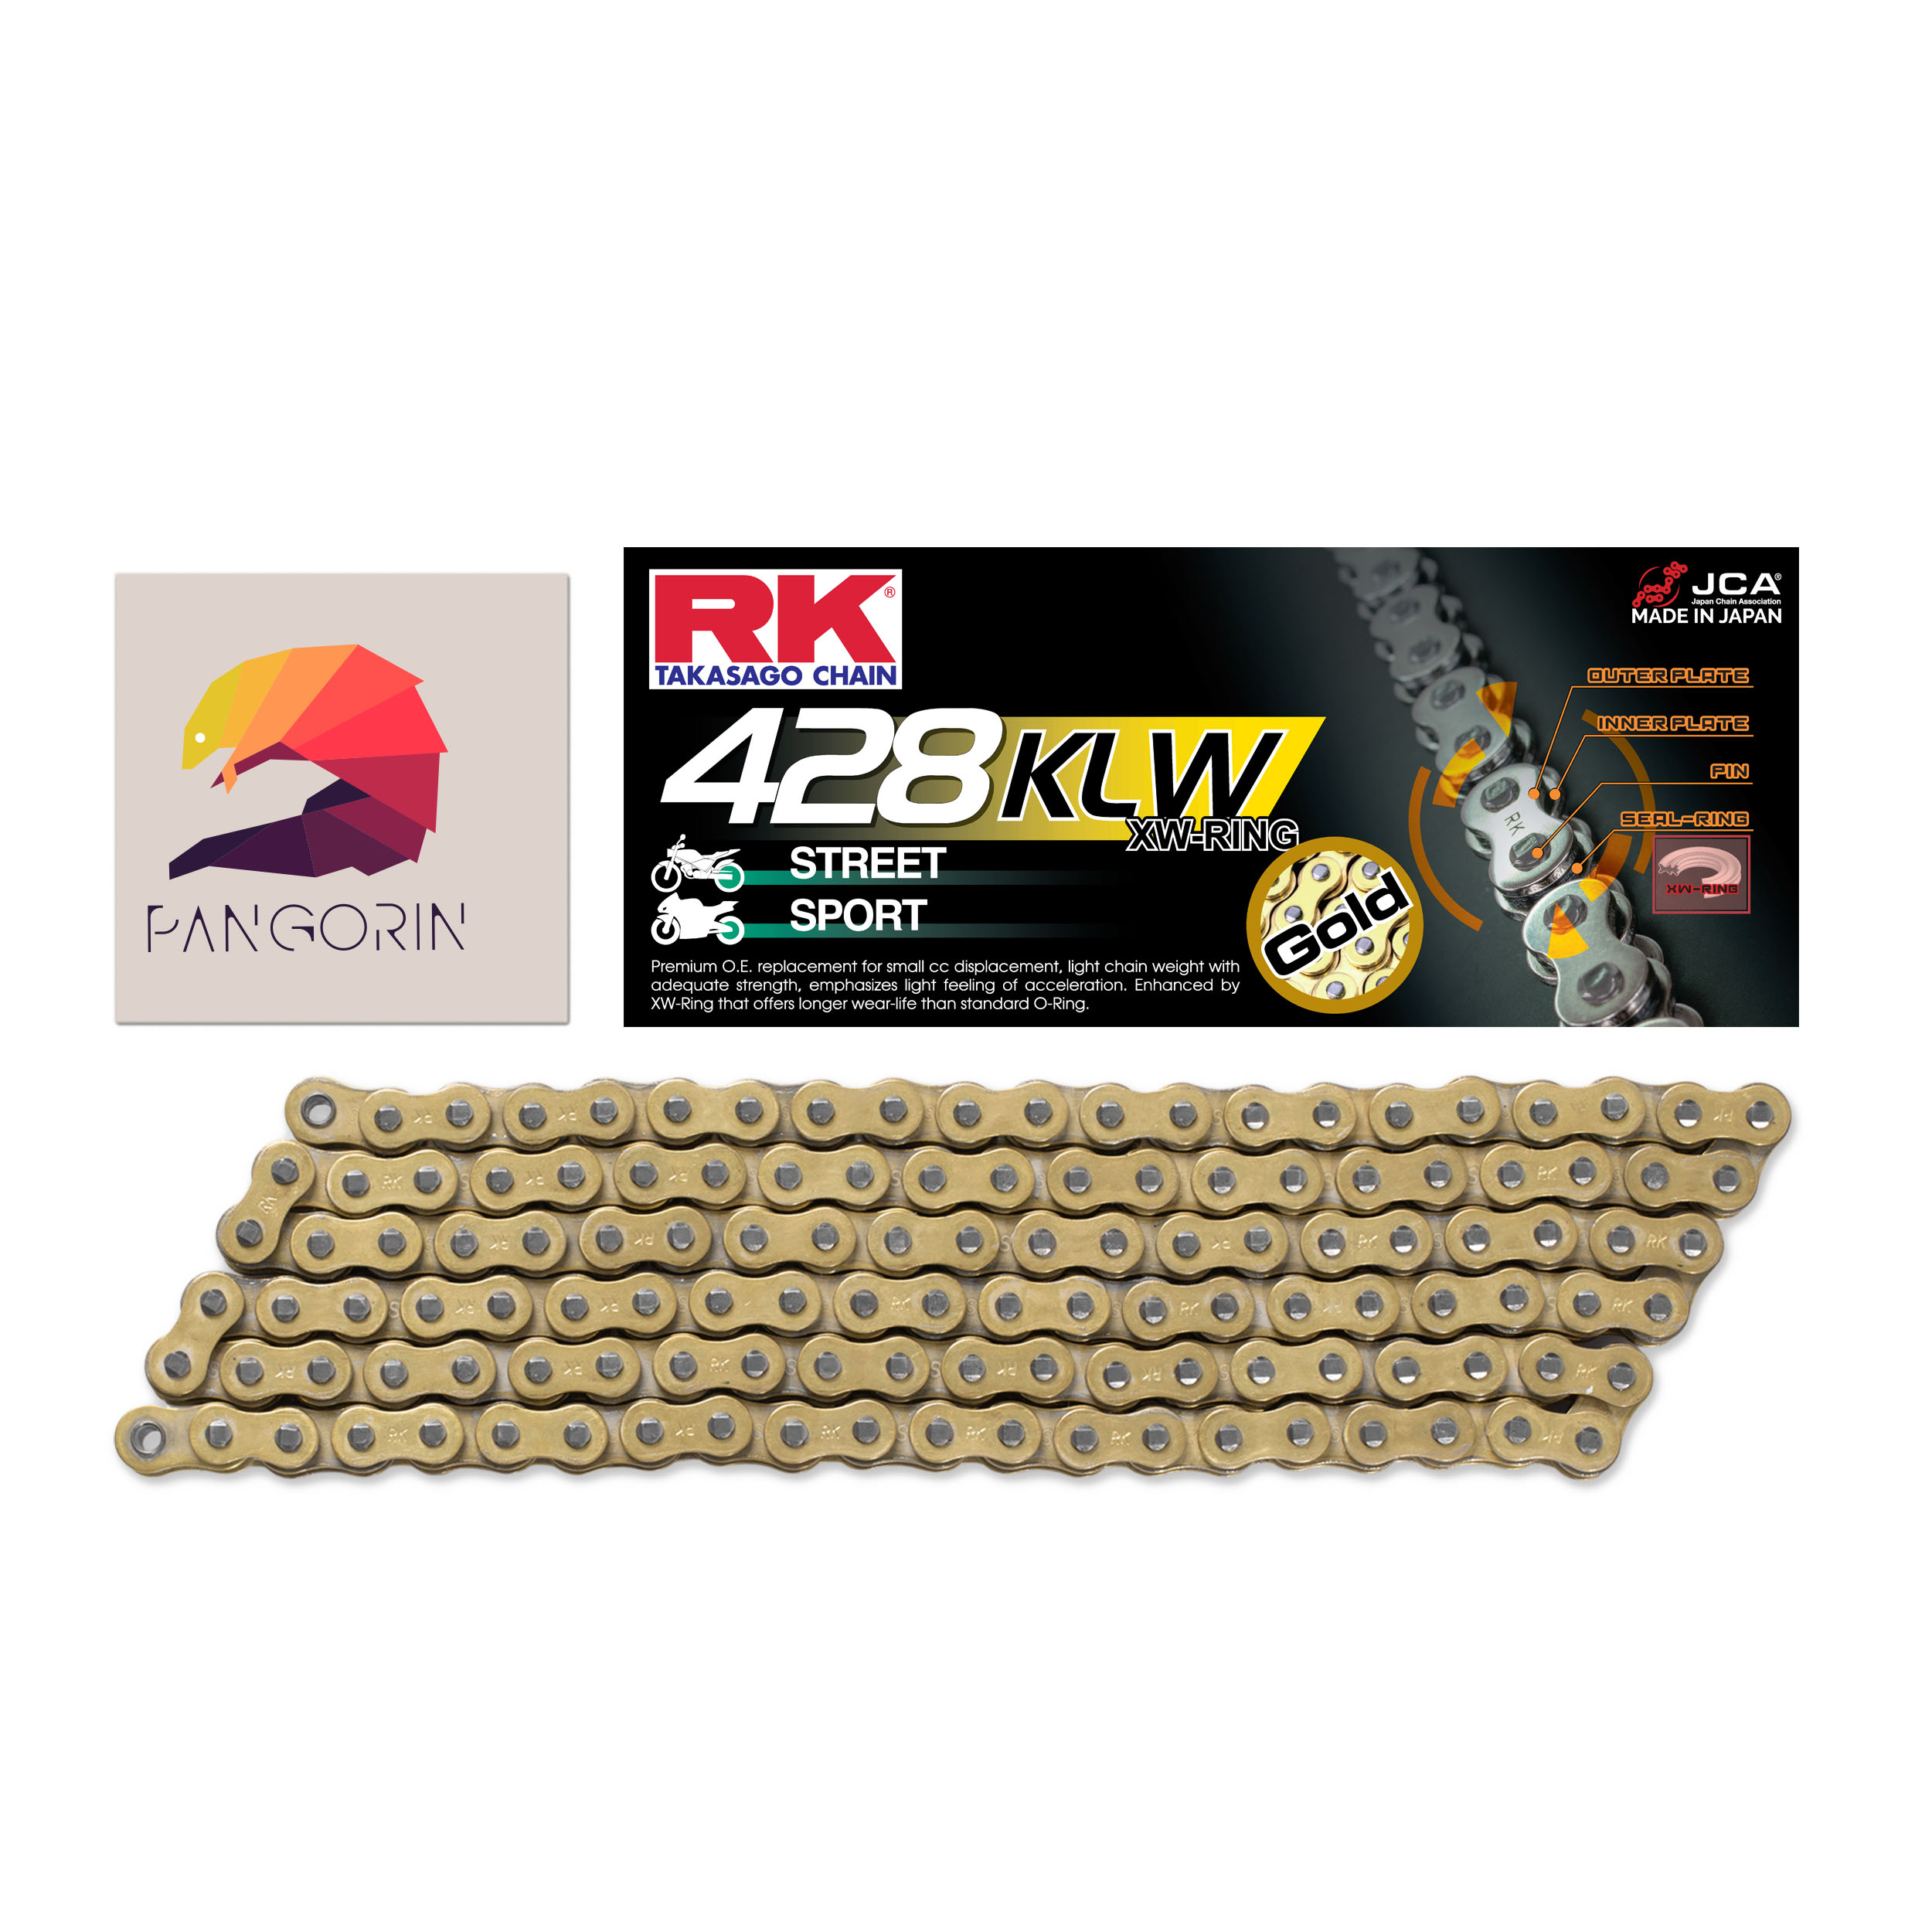 RK chain - Sên (Xích) Yamaha Exciter 135 - 428 10 ly mã KLW Phốt XW-ring - Màu Vàng (Gold)